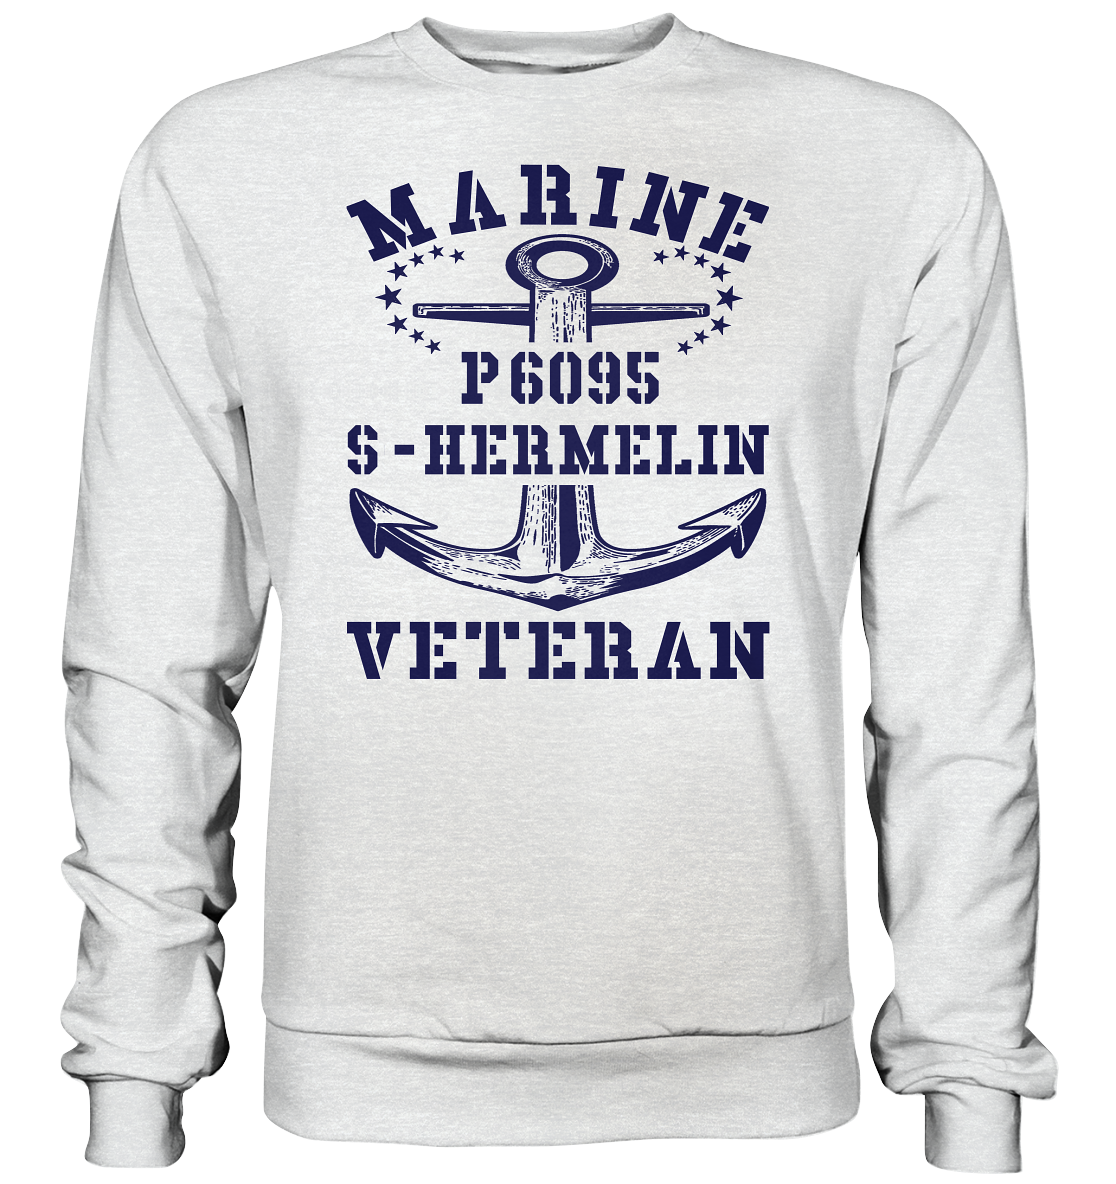 P6095 S-HERMELIN Marine Veteran - Premium Sweatshirt